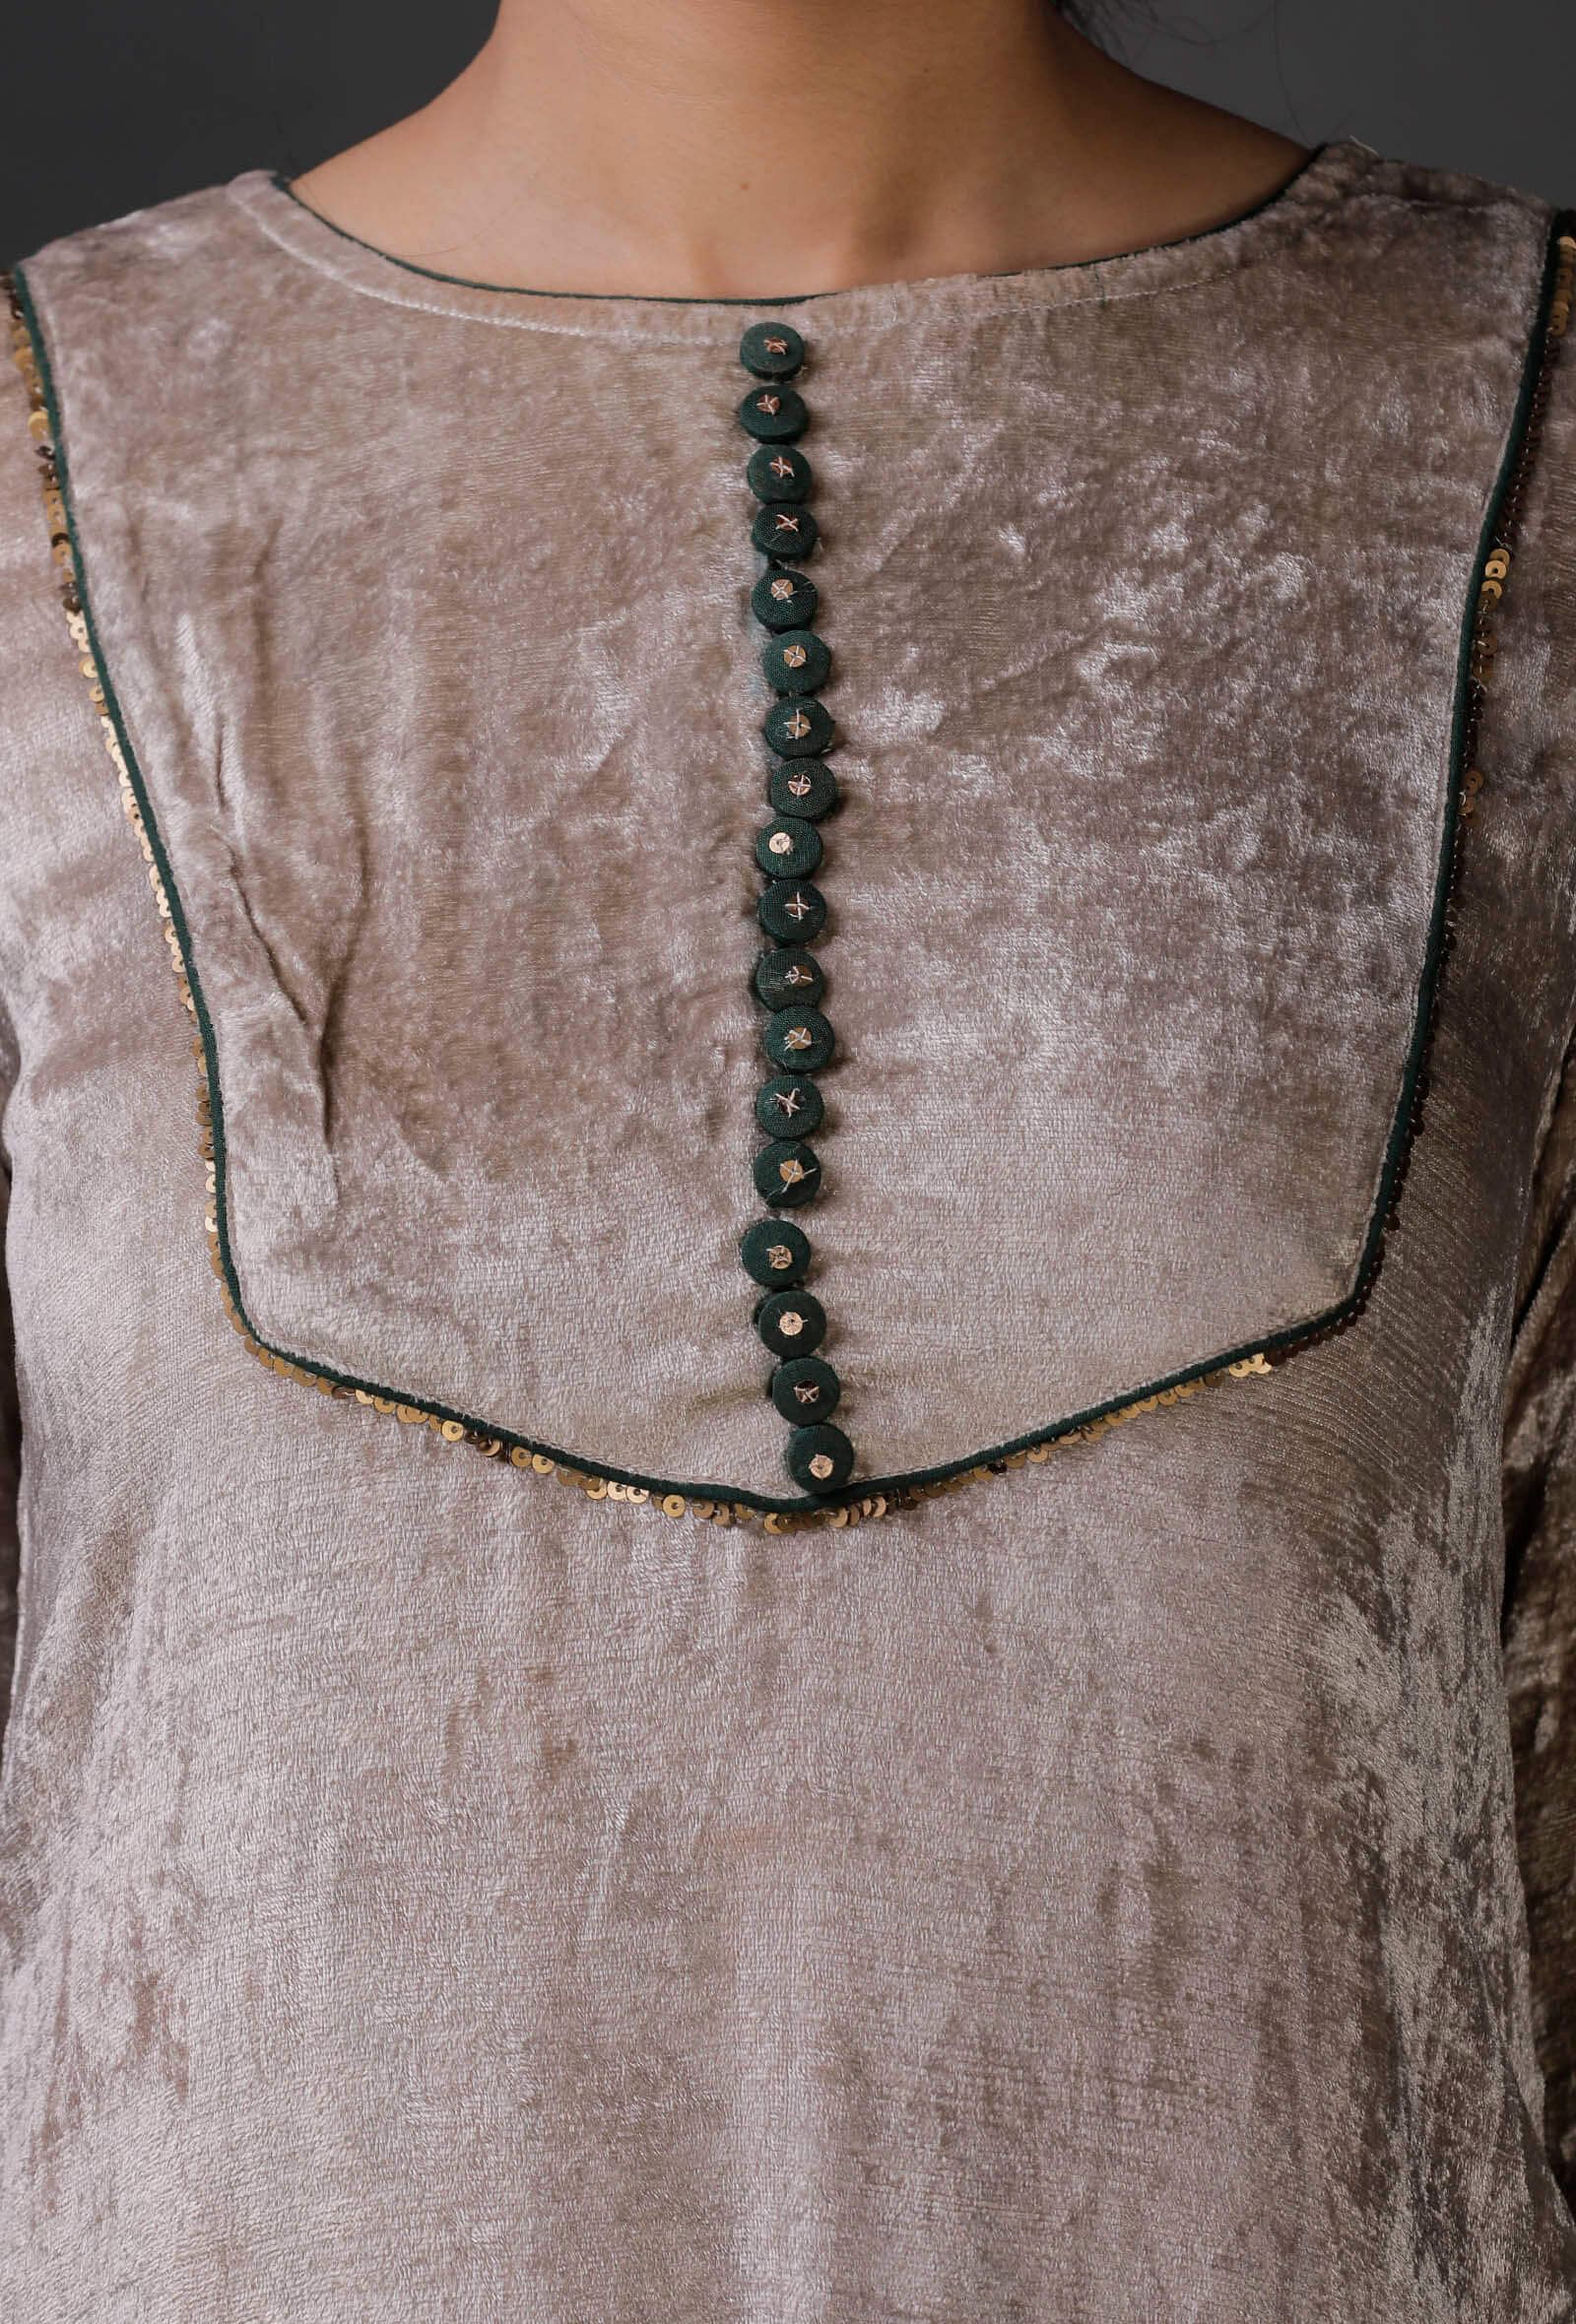 Grey Velvet front yoke lace embroidered kurta